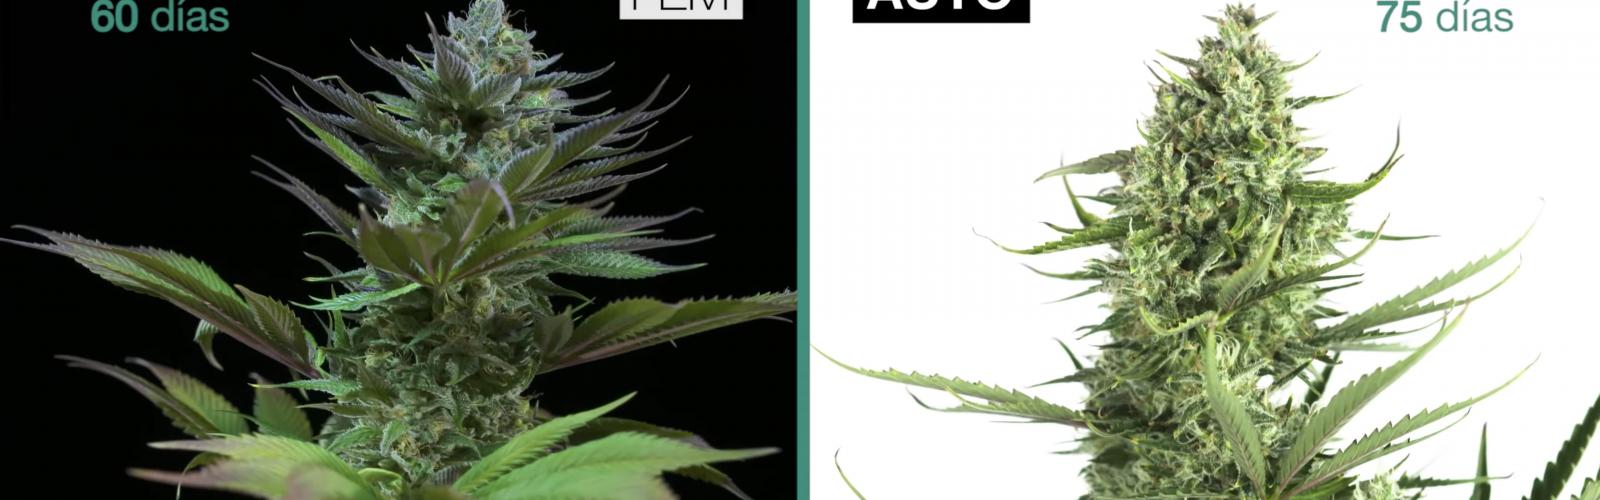 🥇 Feminizadas o autoflorecientes ▷ Diferencias entre marihuana